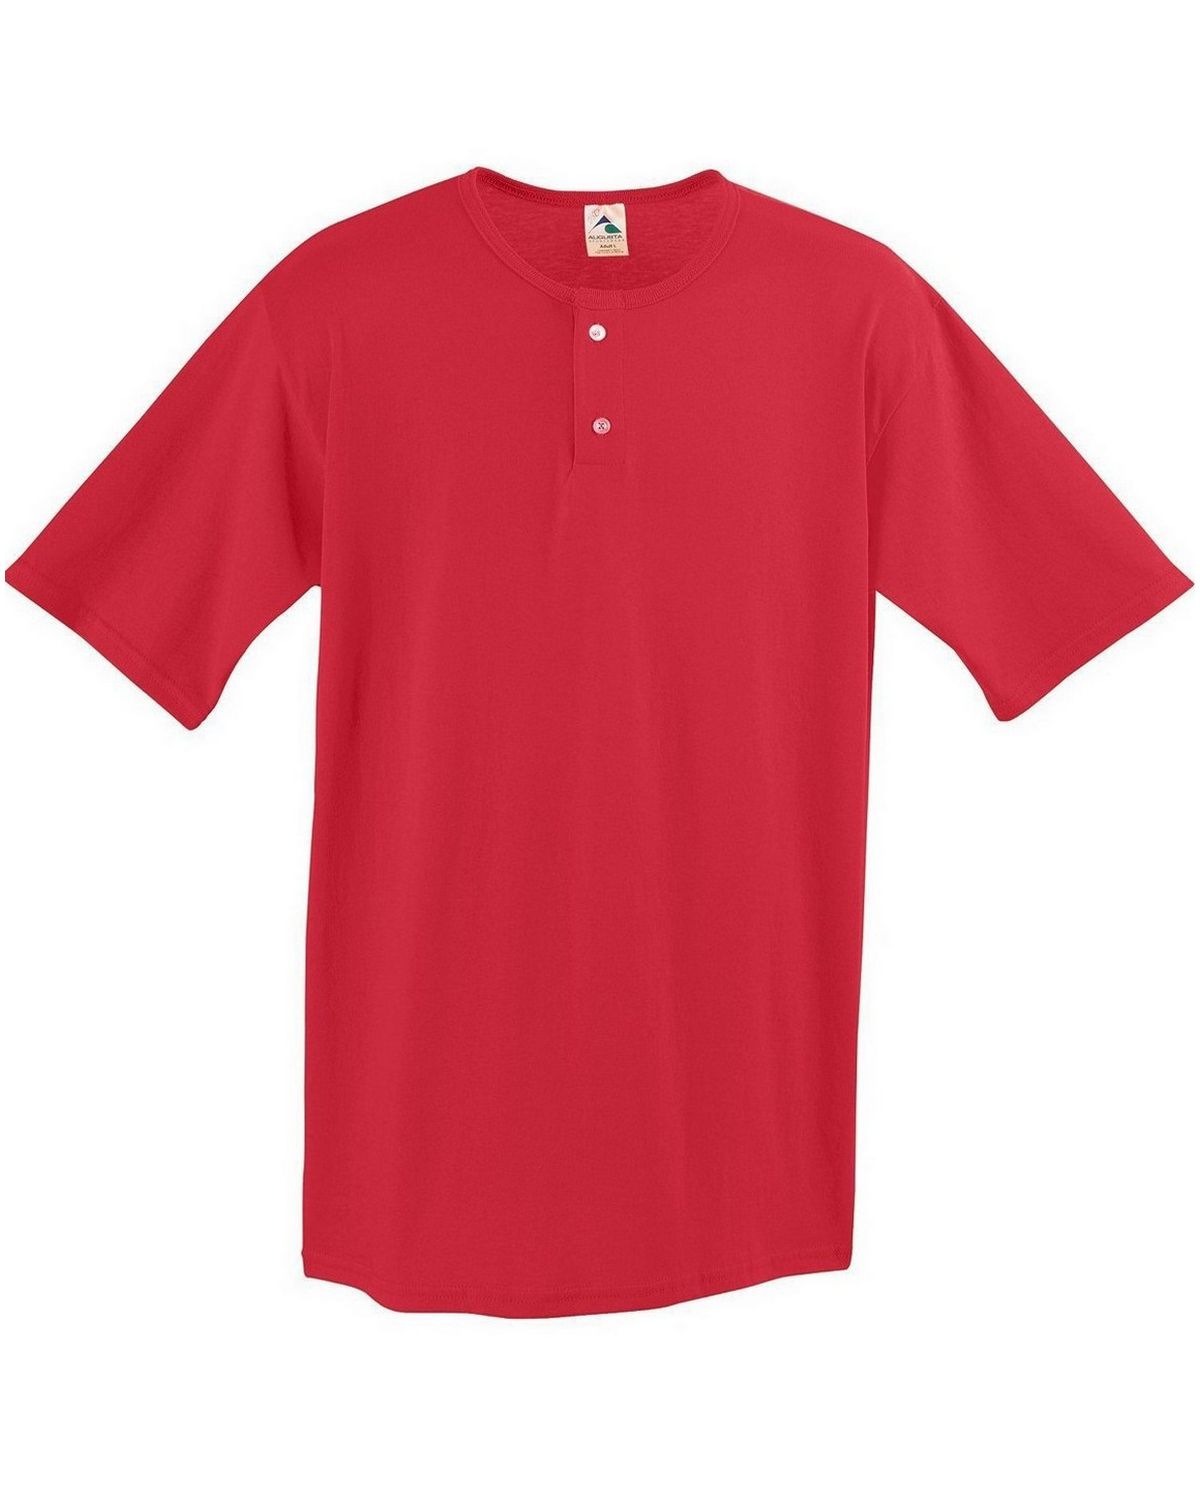 Augusta Sportswear 580 Men's 50/50 Two Button Baseball Jersey